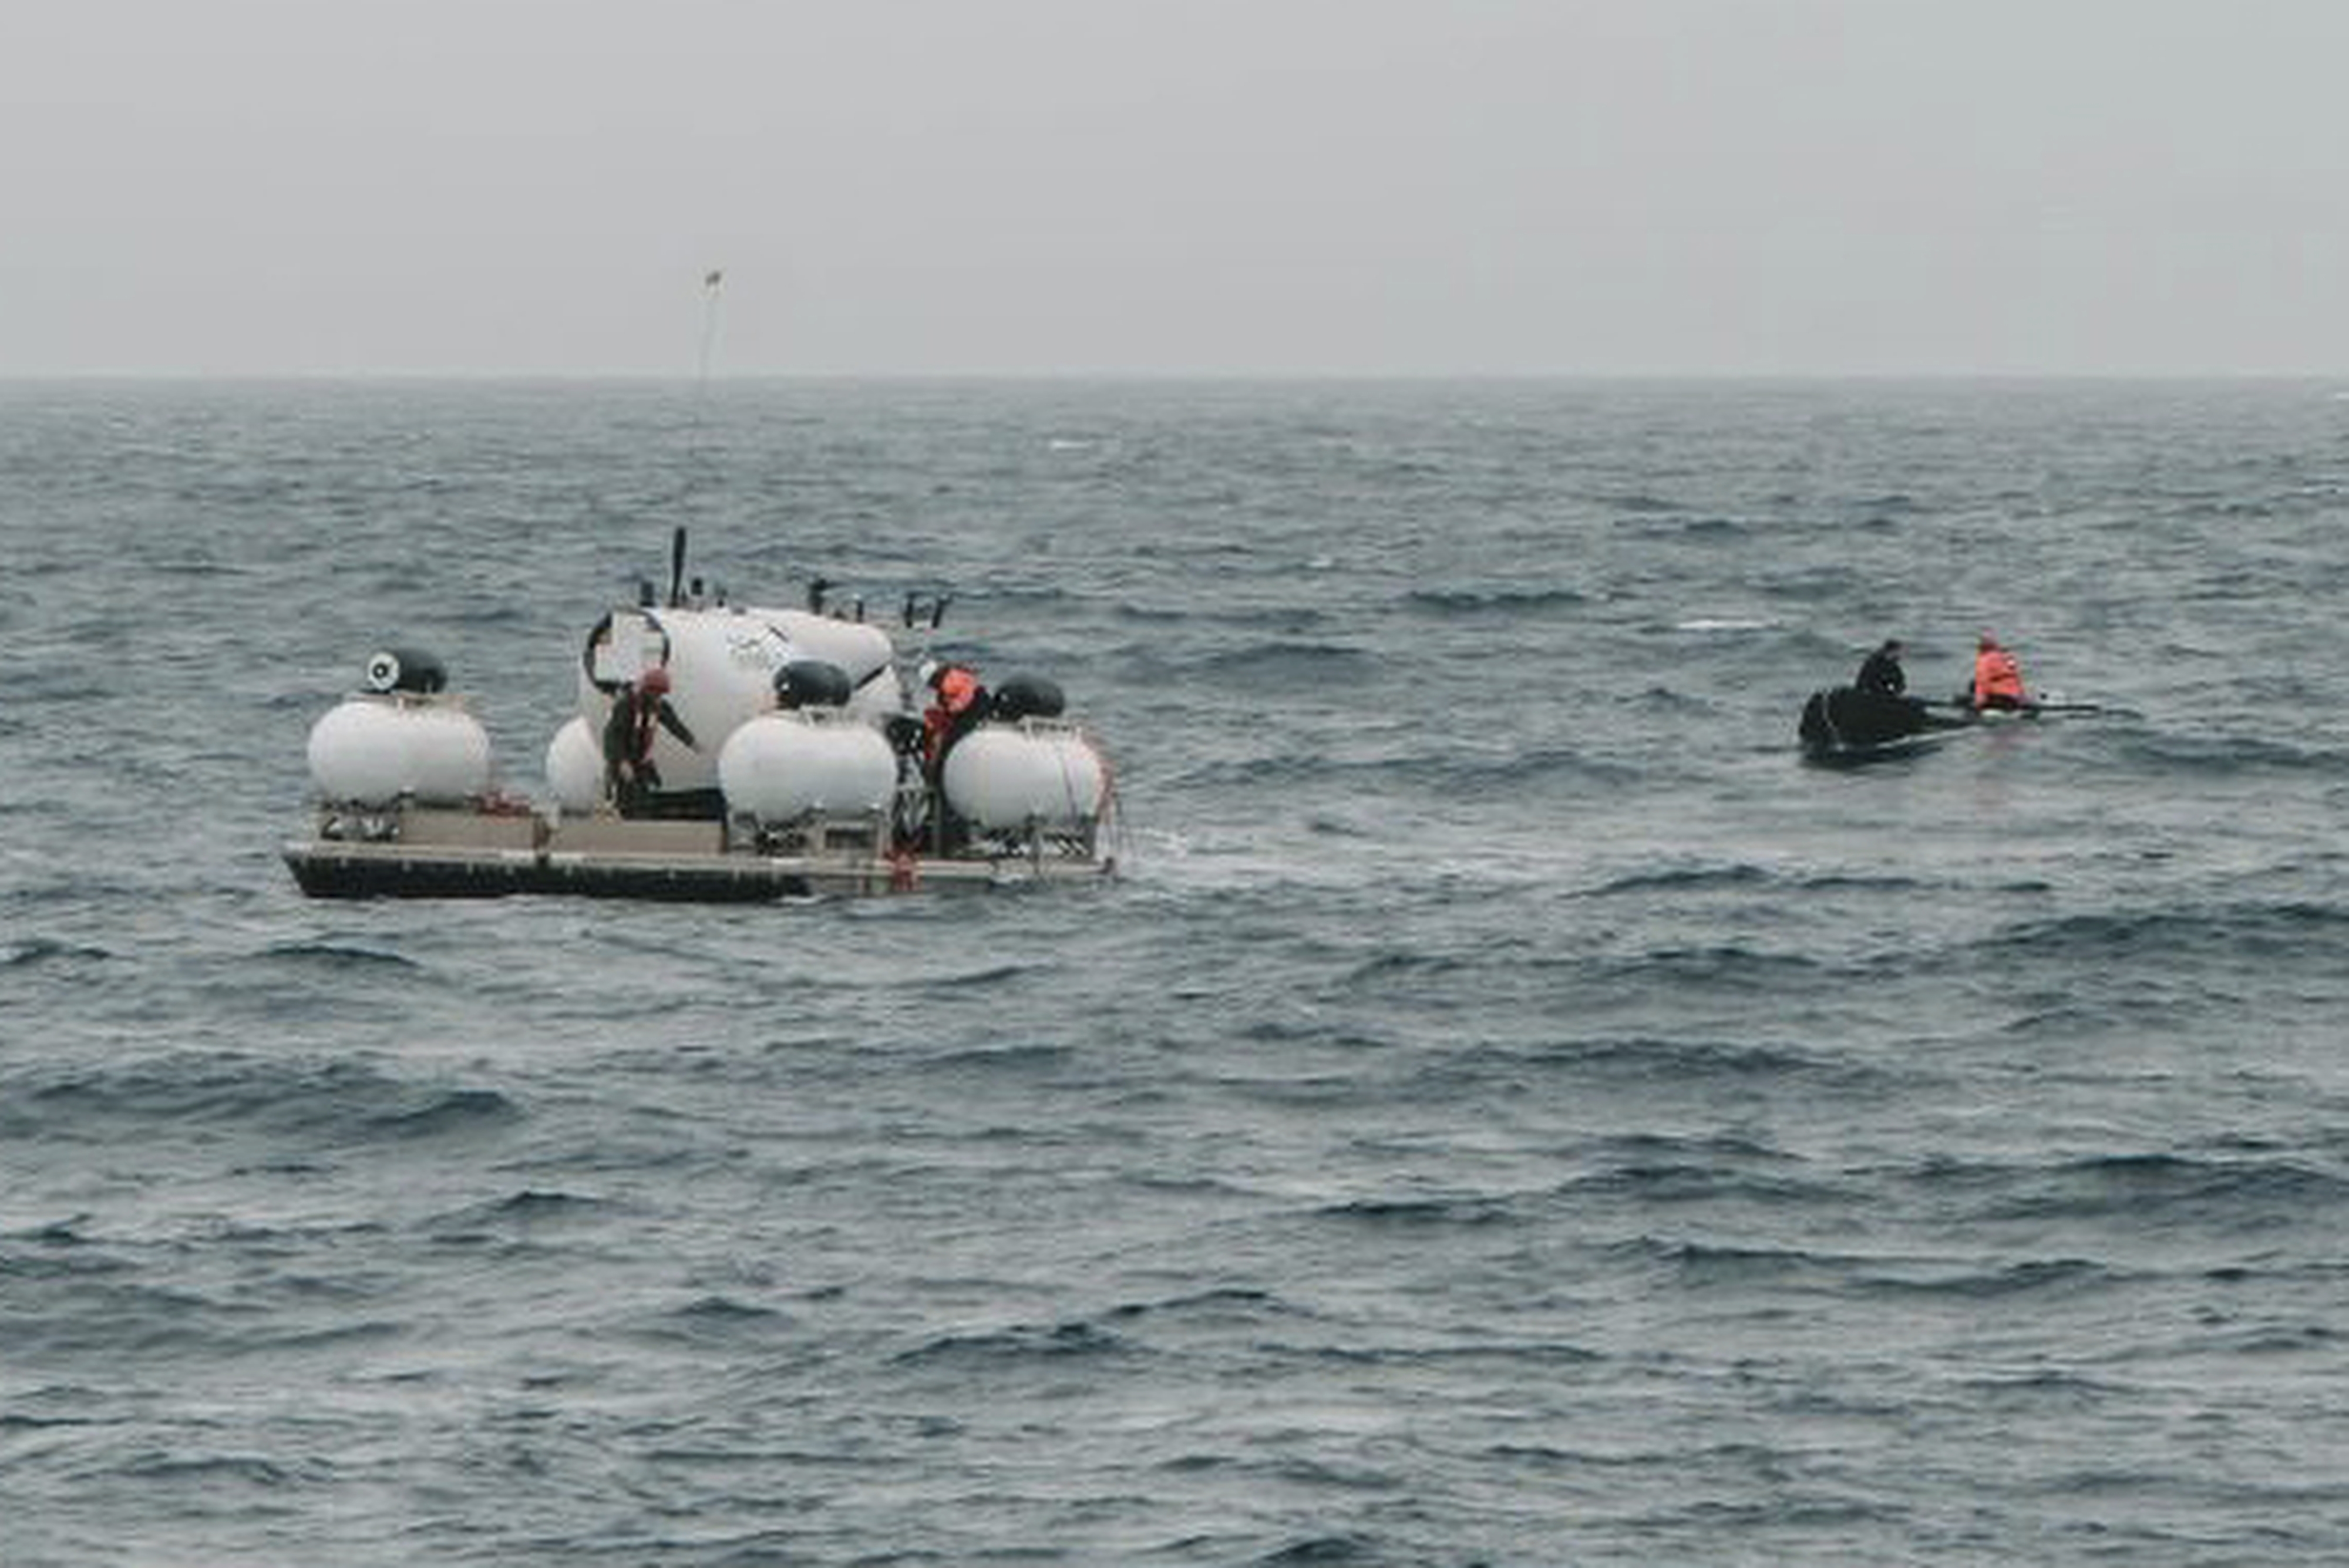 Le yacht coule, un mème insubmersible (2023)